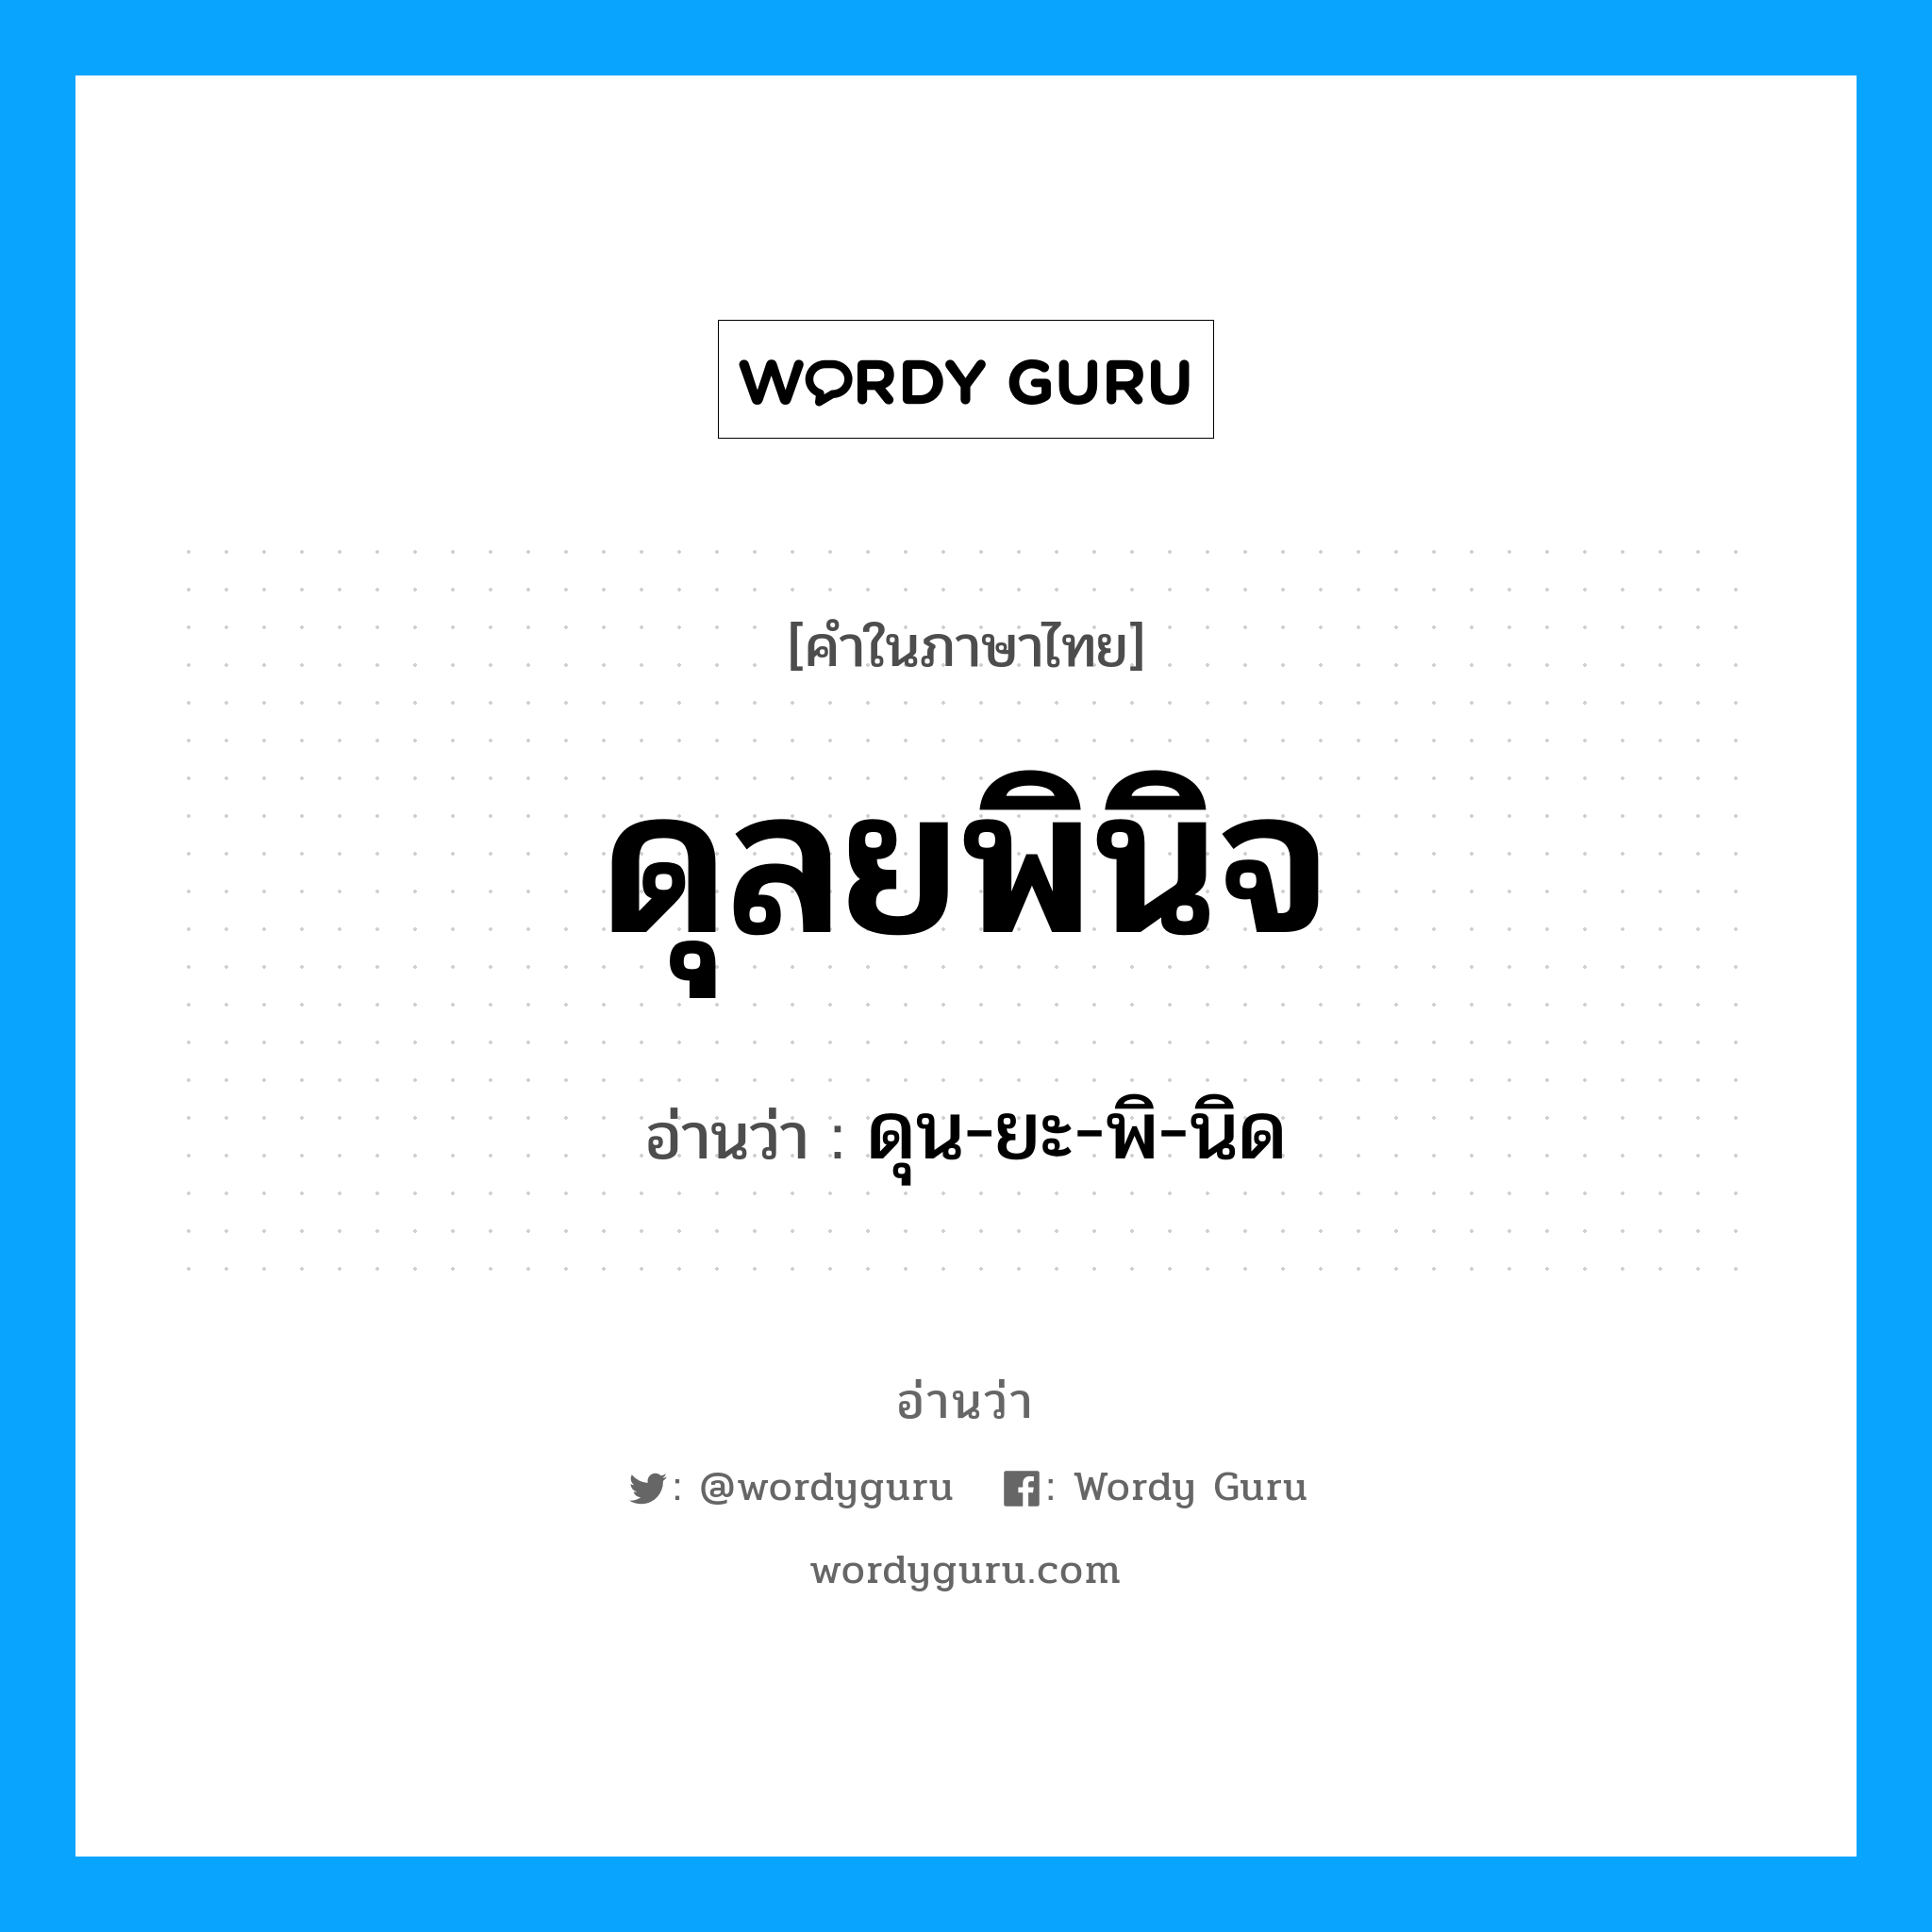 ดุน-ยะ-พิ-นิด เป็นคำอ่านของคำไหน?, คำในภาษาไทย ดุน-ยะ-พิ-นิด อ่านว่า ดุลยพินิจ